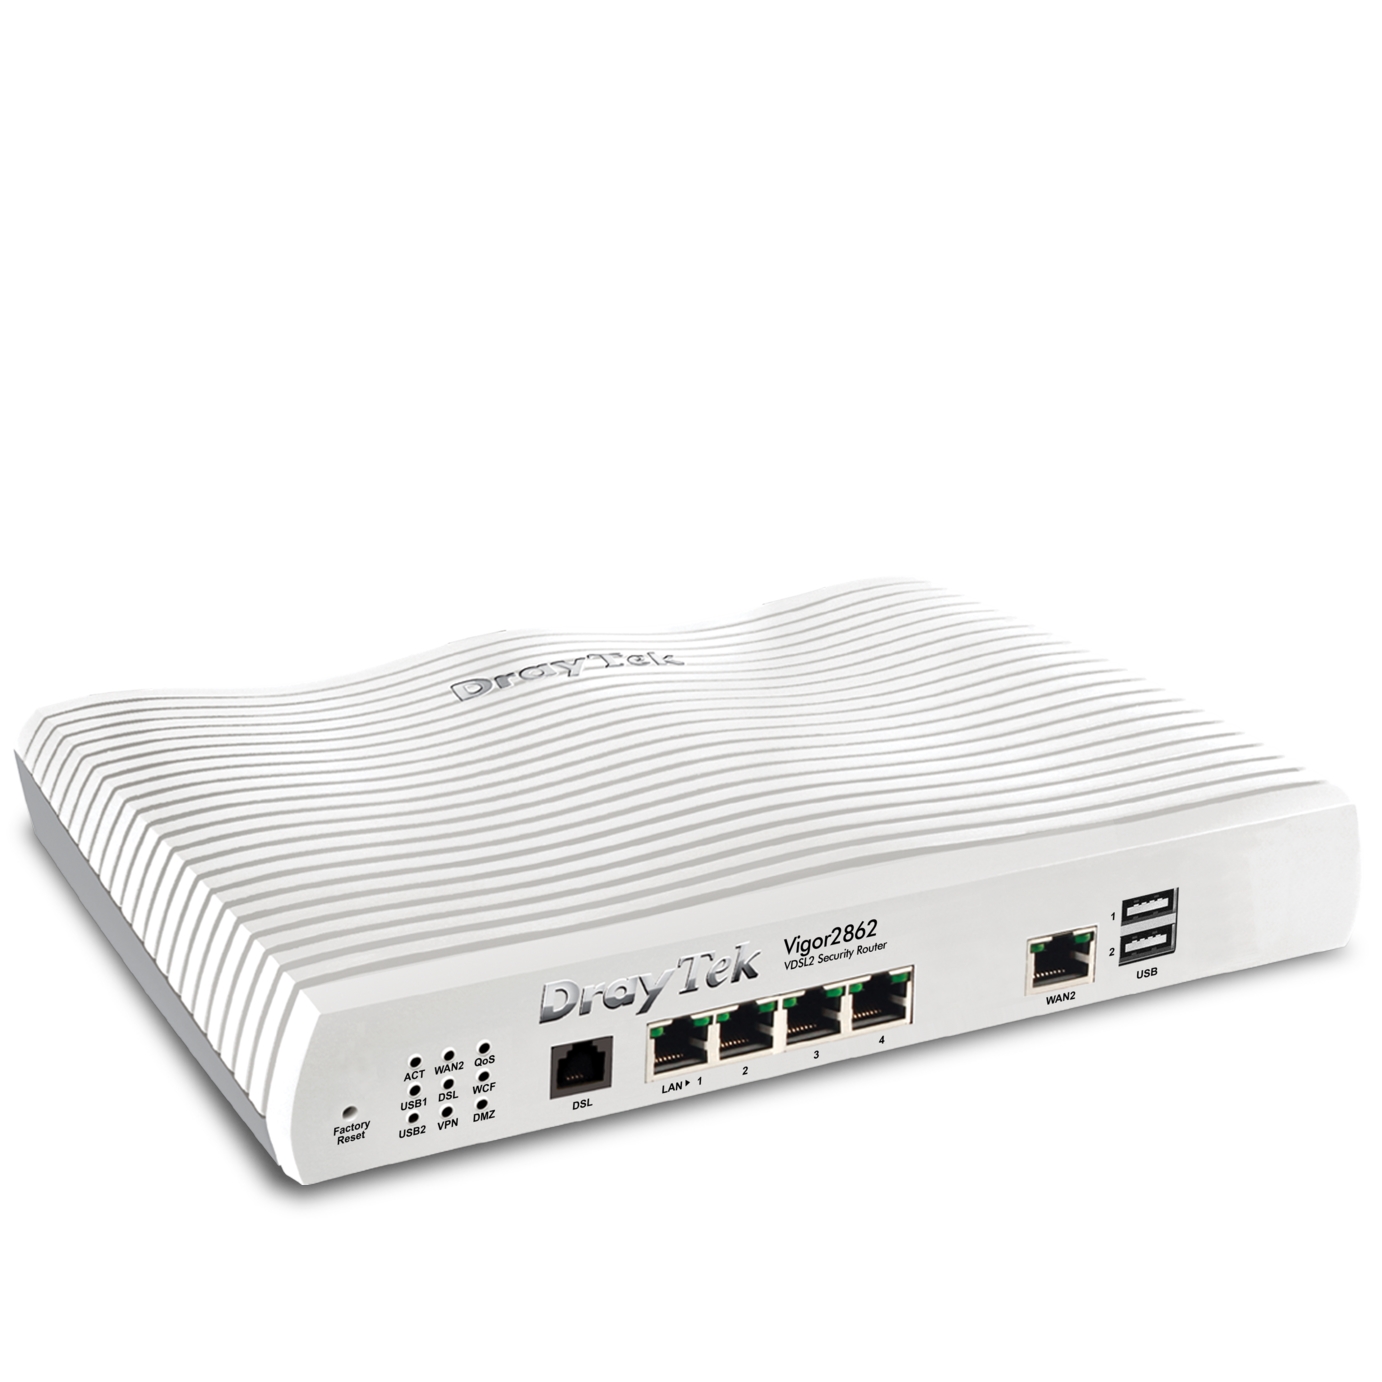 DRAYTEK VIGOR 2862 4 PORT+2 USB VPN FIREWALL VDSL2/ADSL2+ MODEM ROUTER